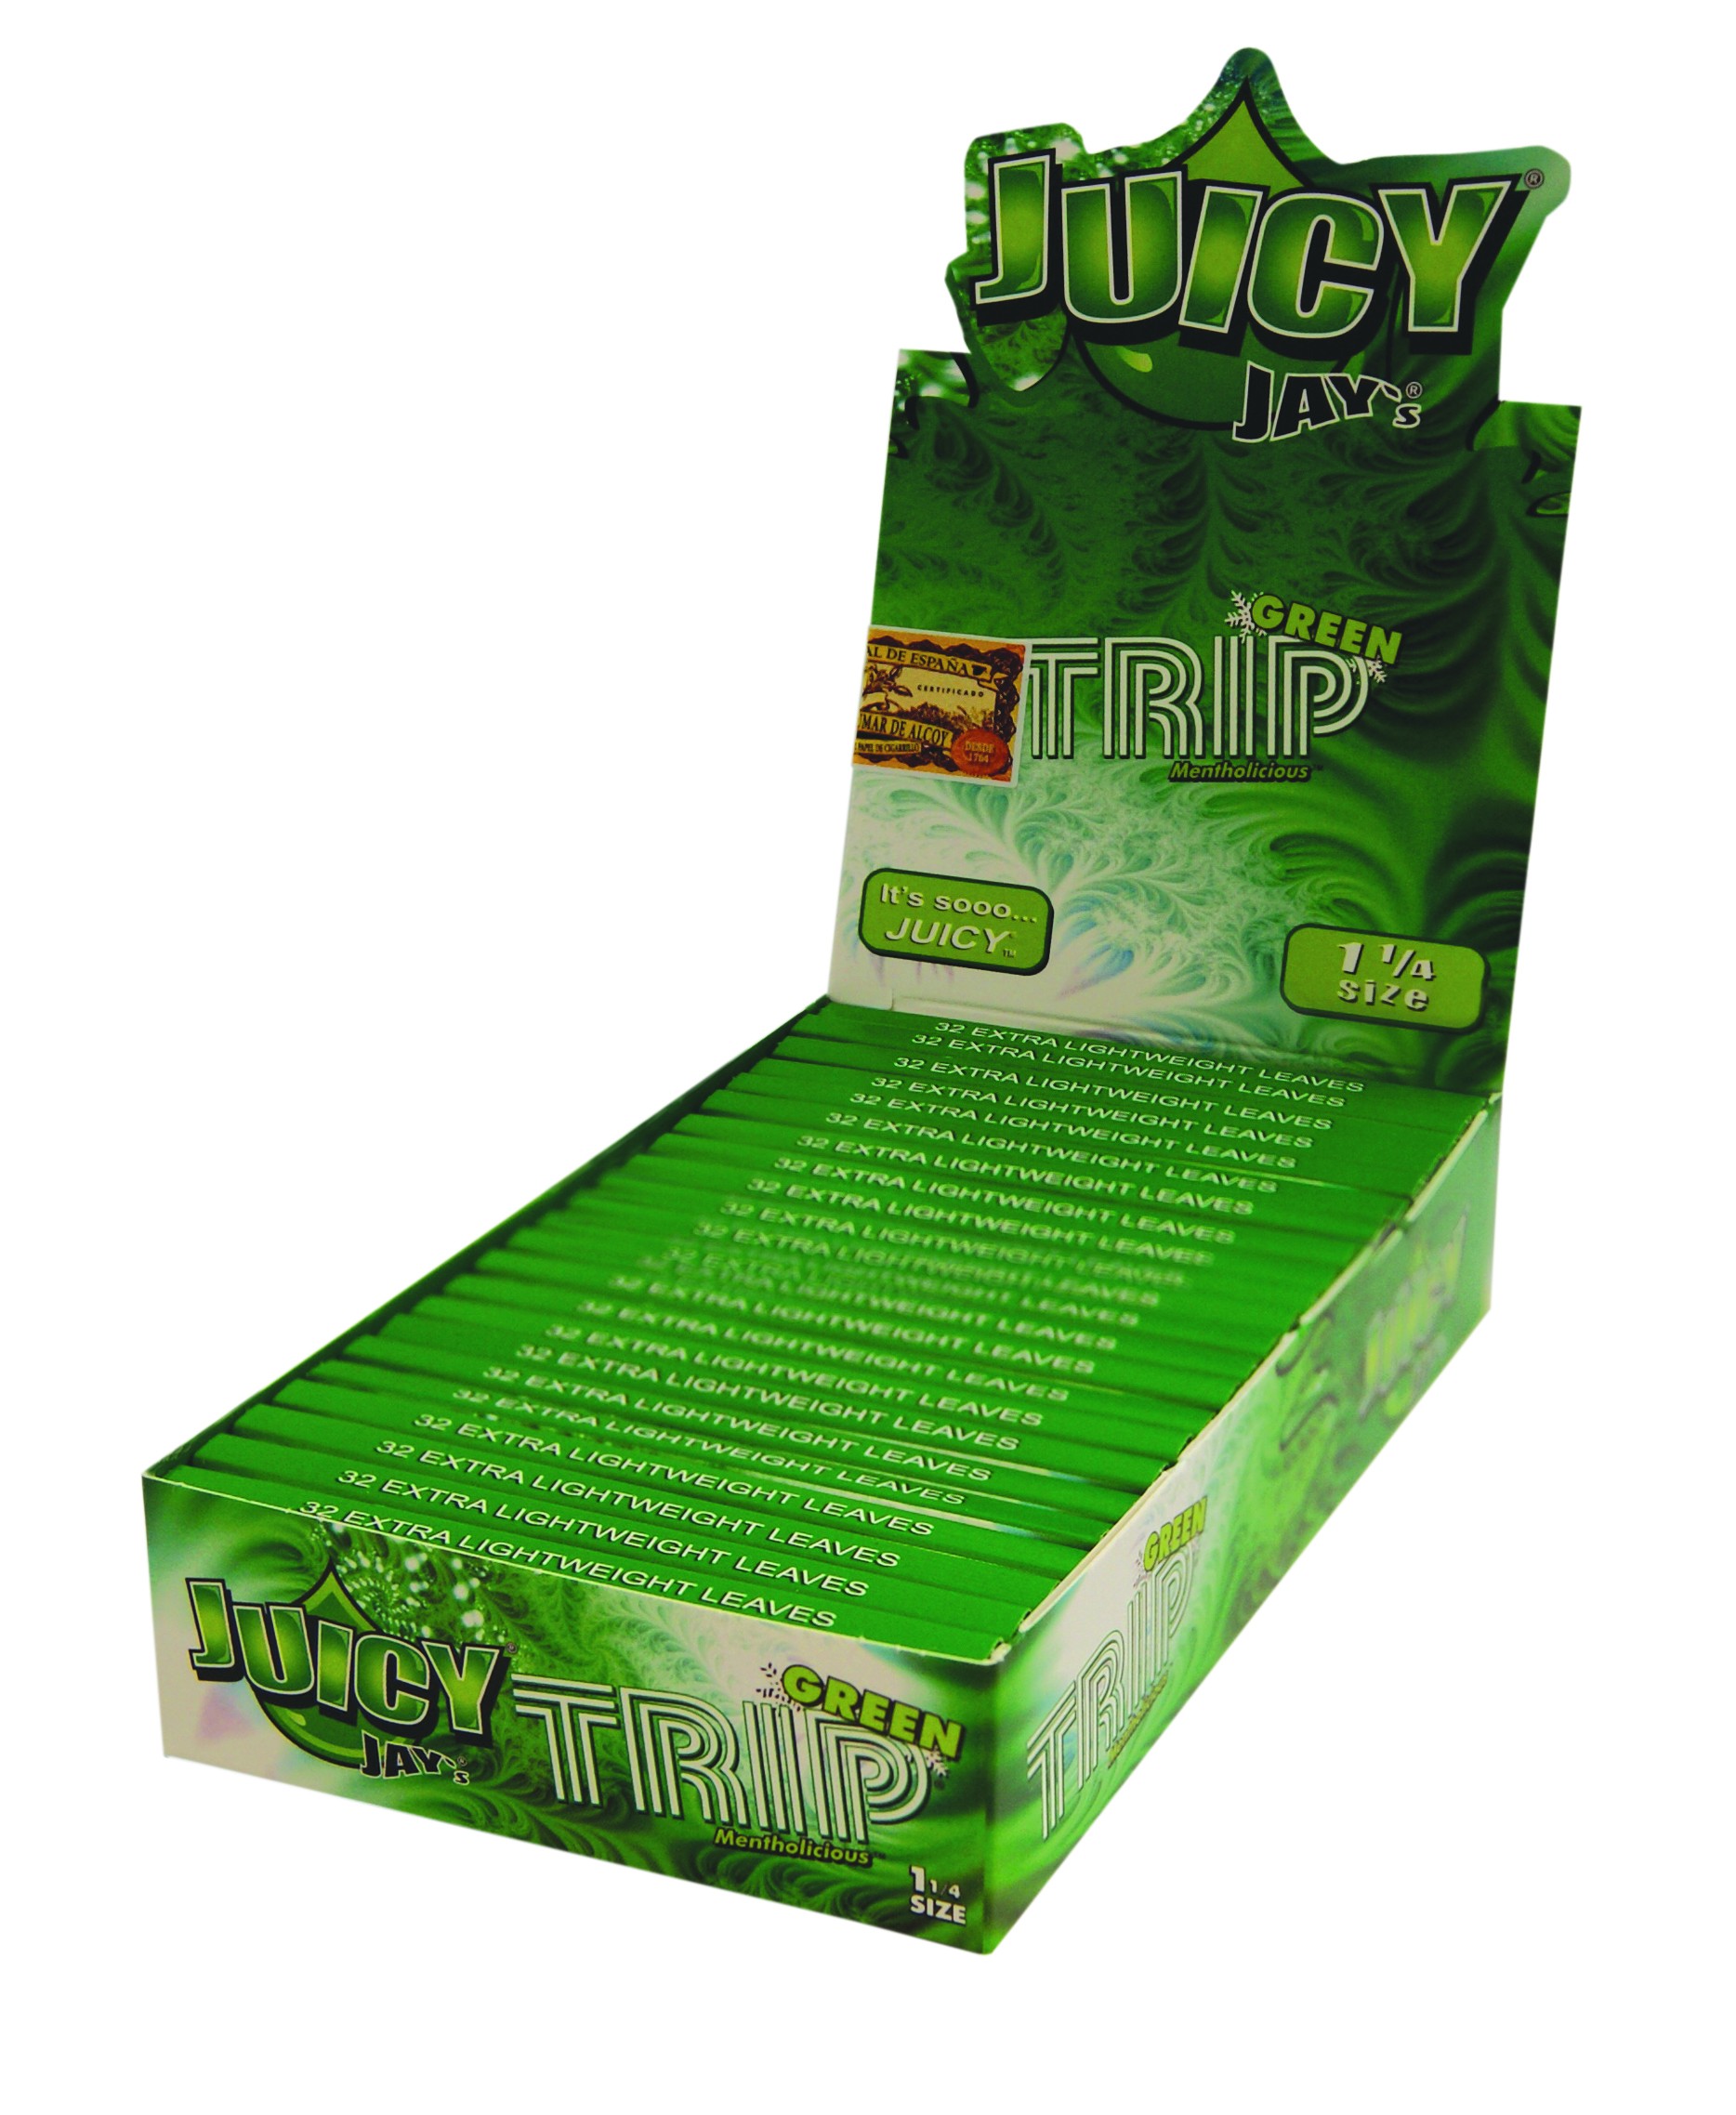 Juicy Jay´s 1 ¼ - Trip